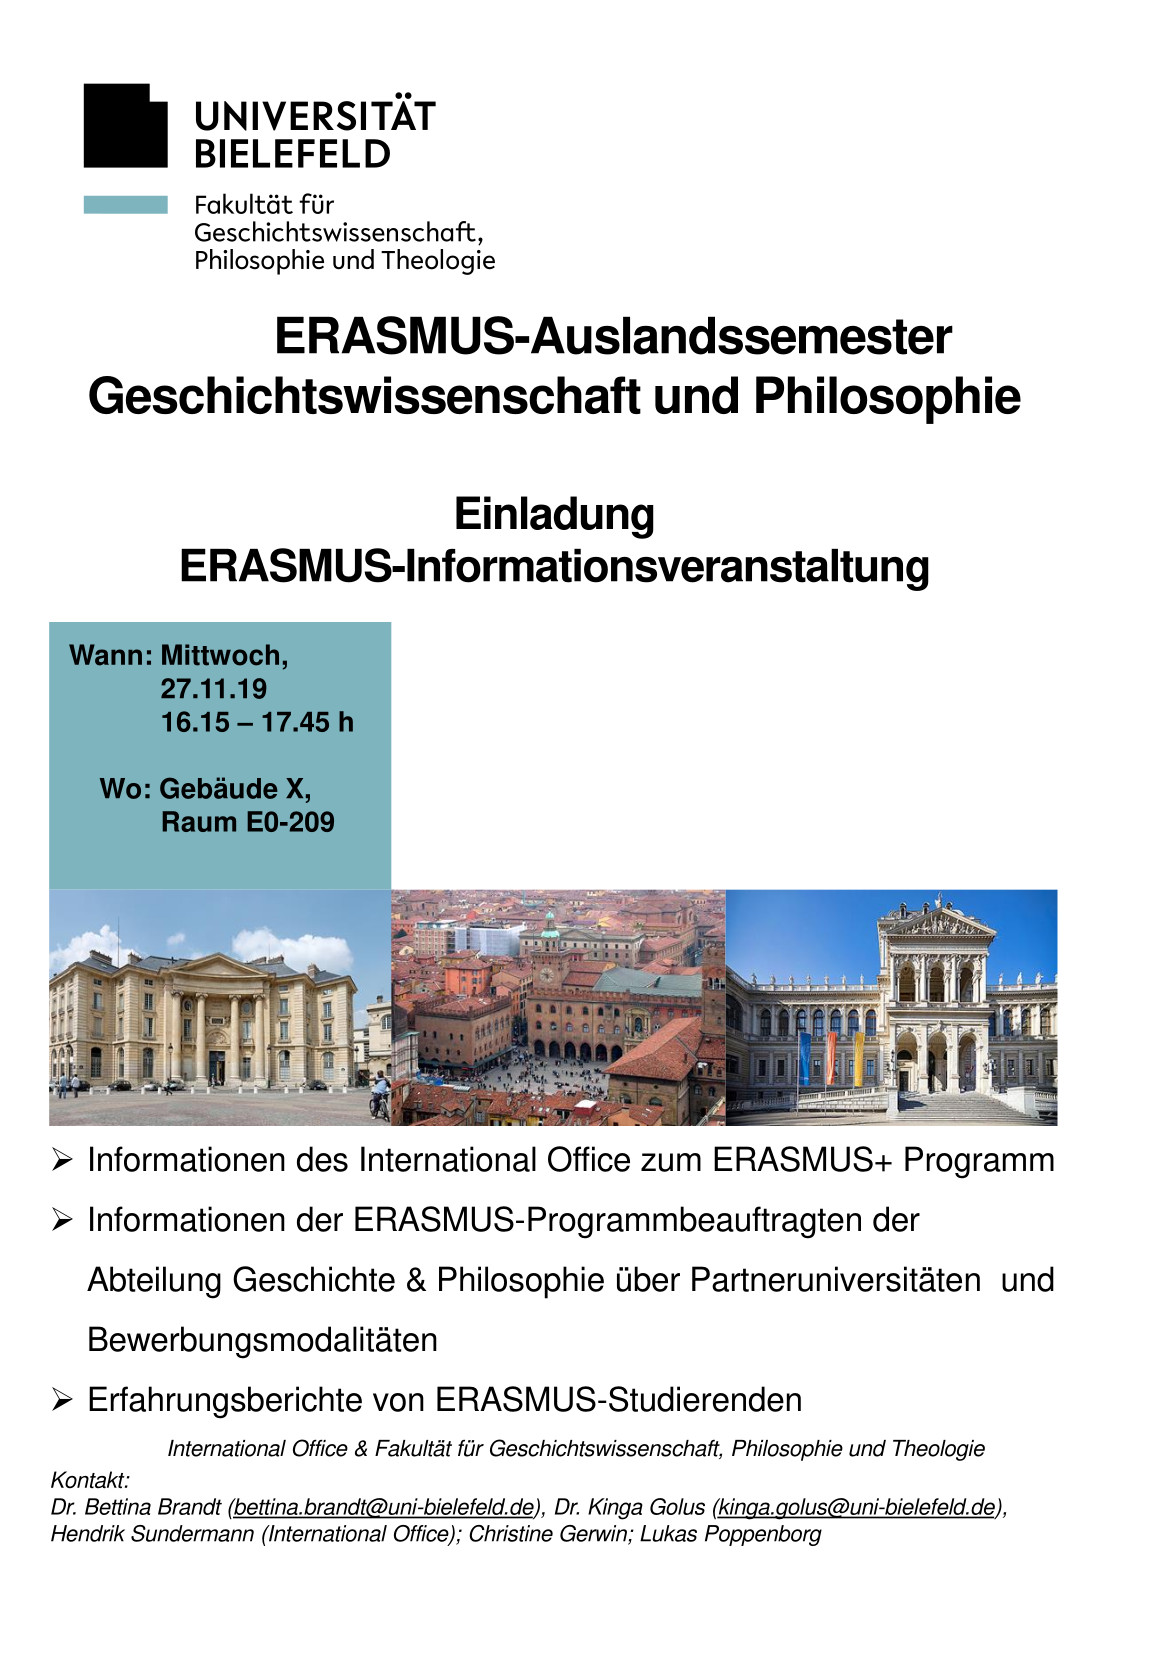 Poster für das ERASMUS Programm